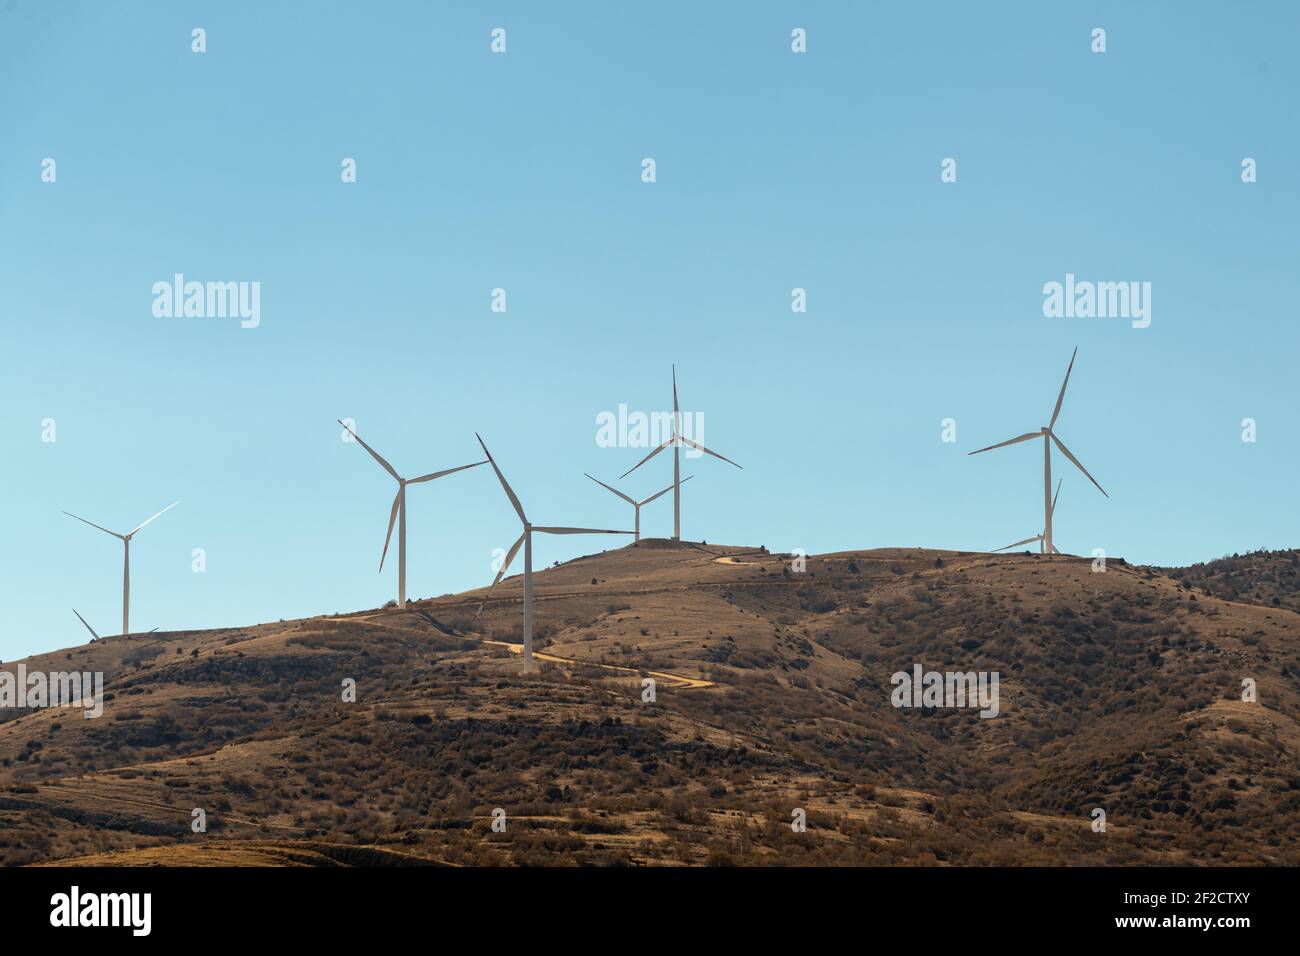 Groupe d'éoliennes pour la production d'énergie électrique renouvelable Banque D'Images